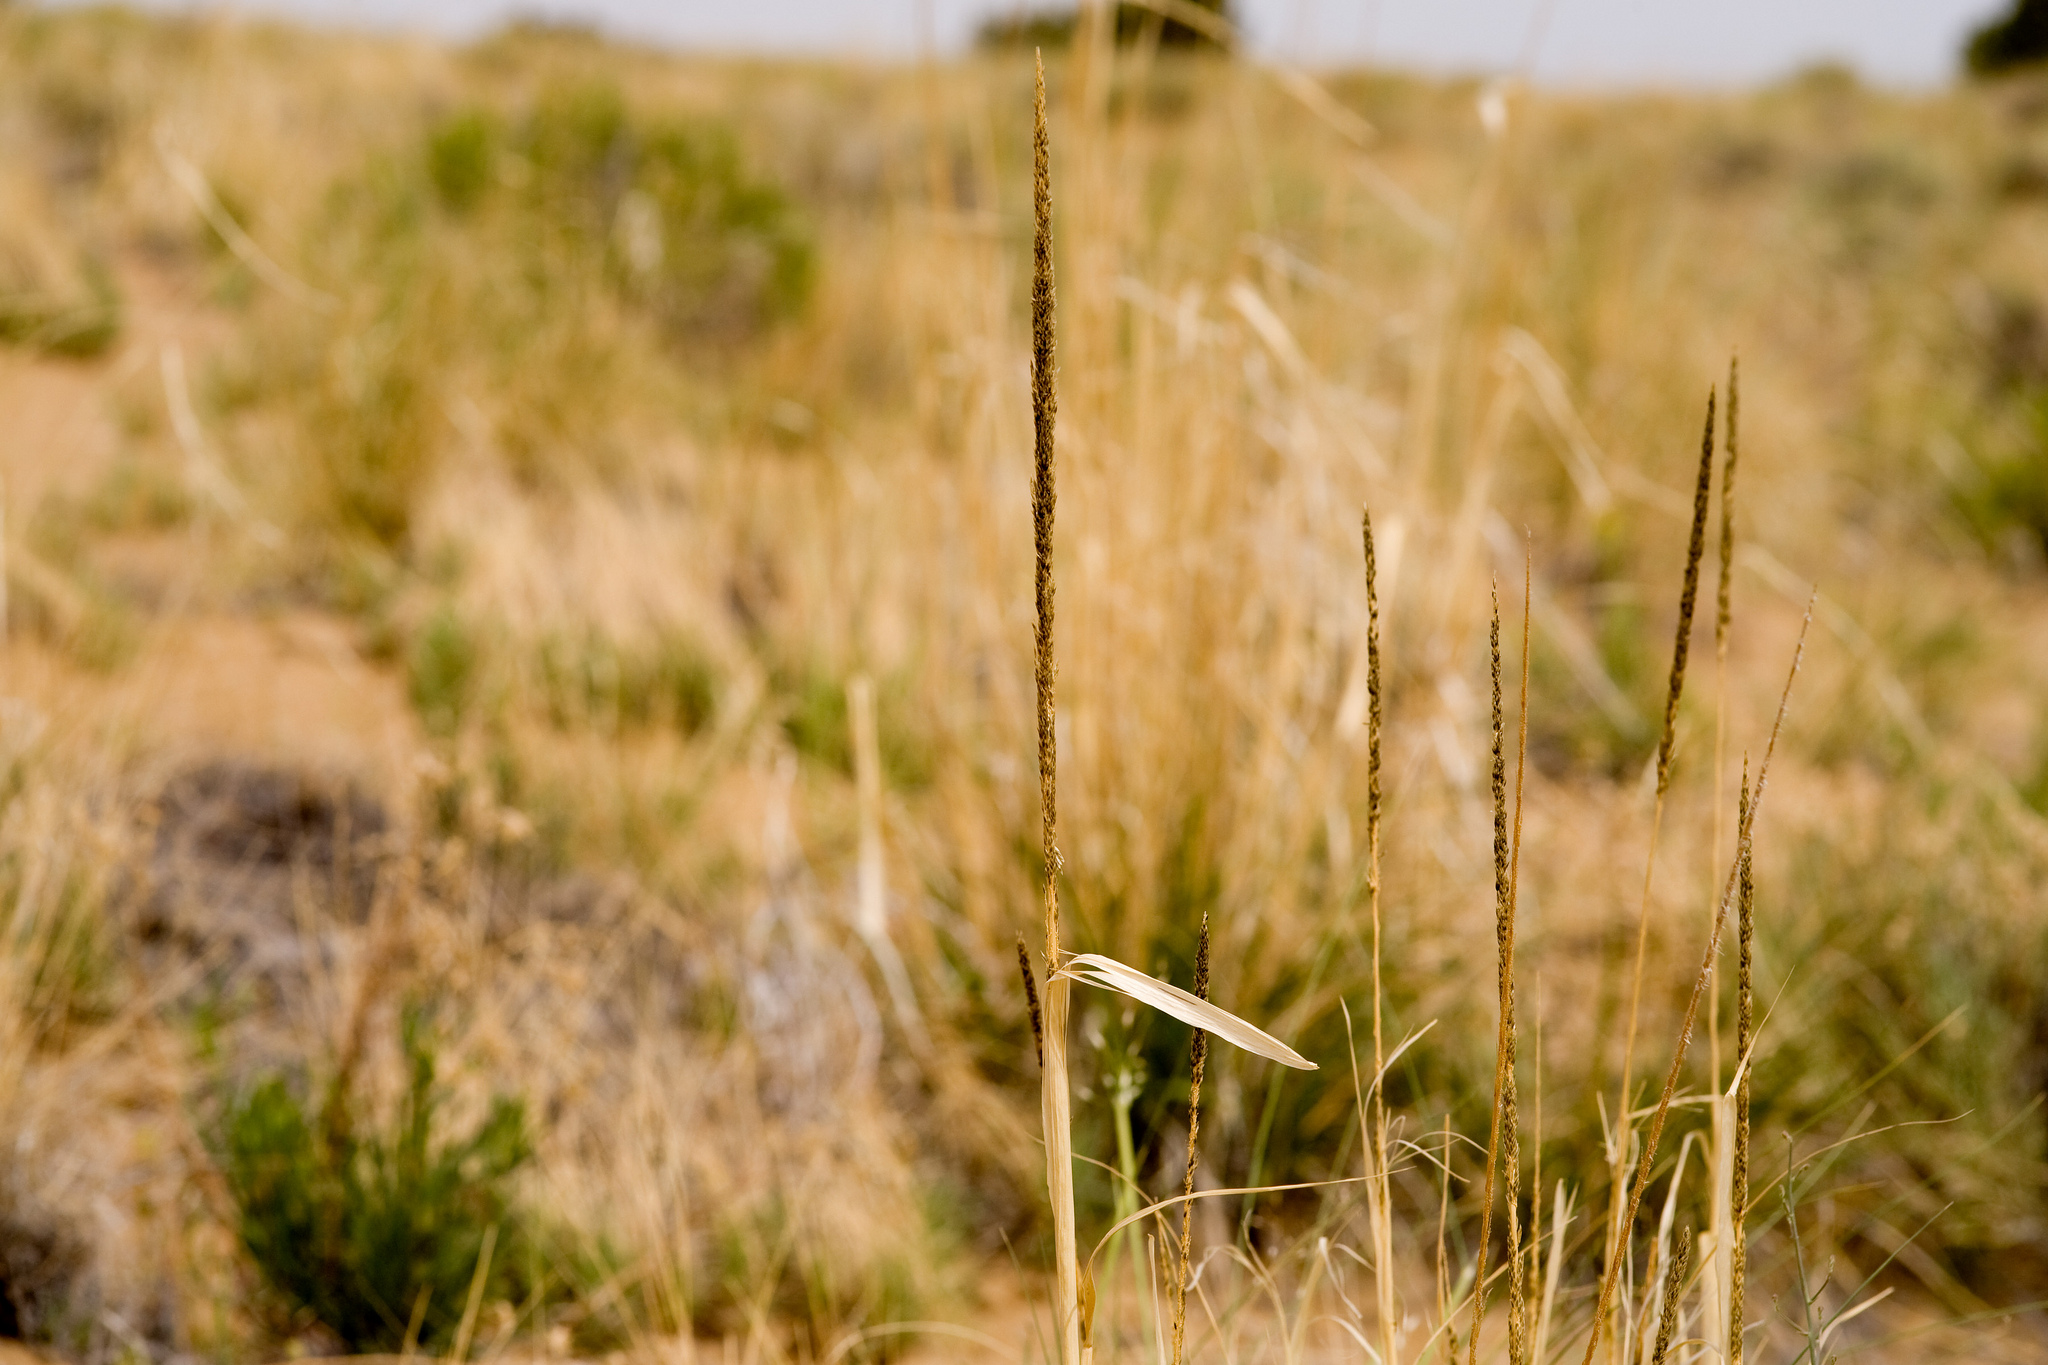 Dry seedhead, leaf sheath, and grassland habitat